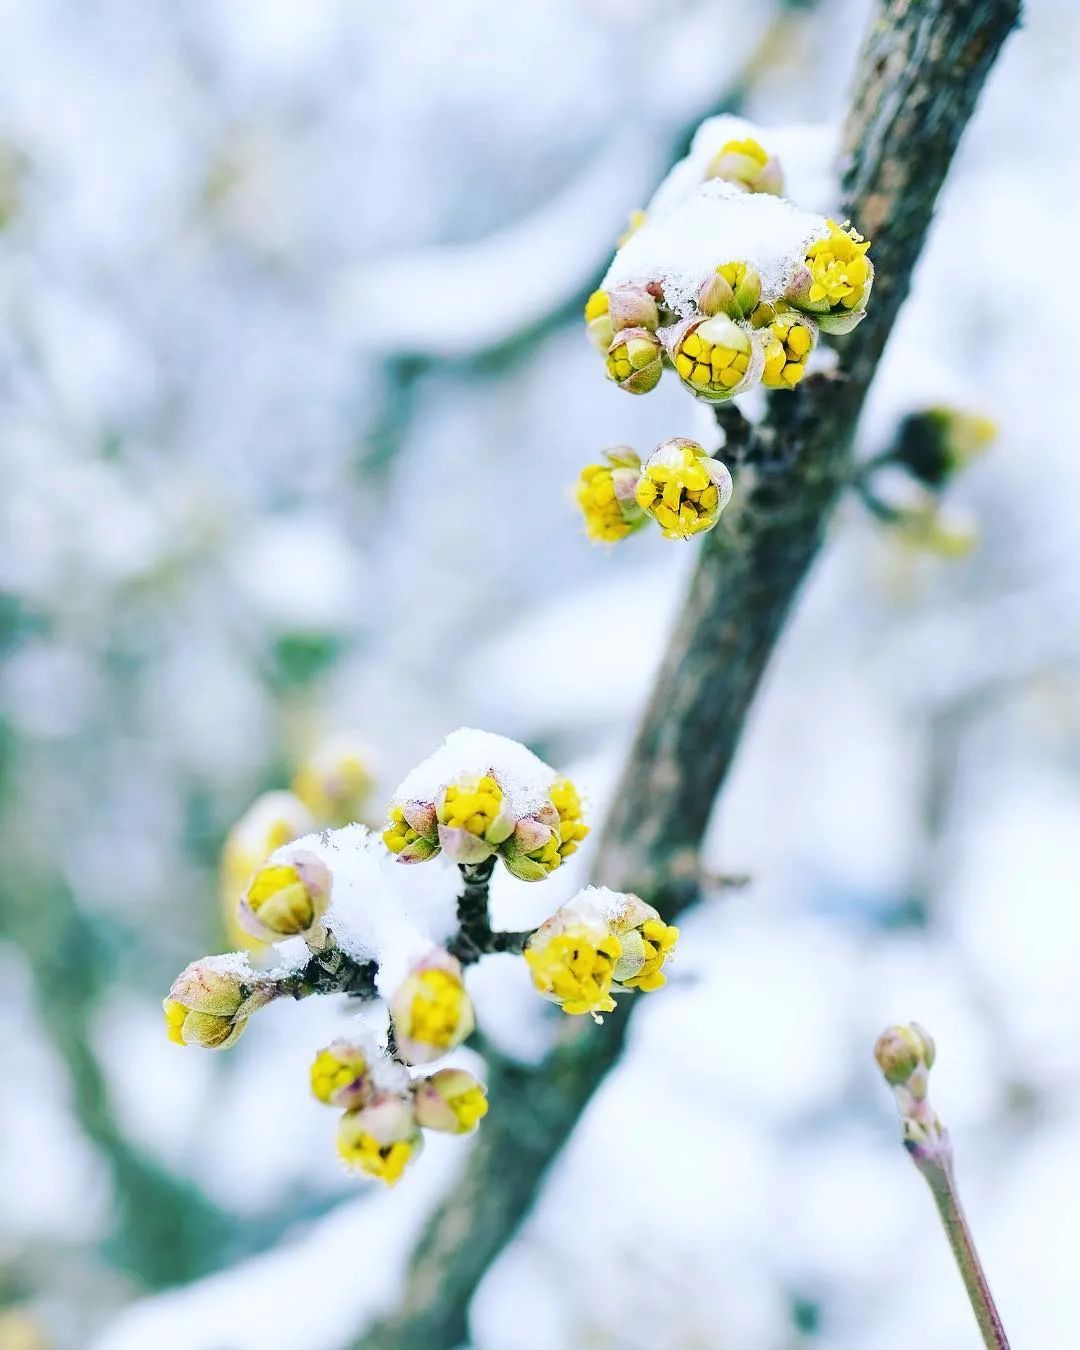 摄影作品欣赏:在冰雪中盛开的花,难得一见,太美了!